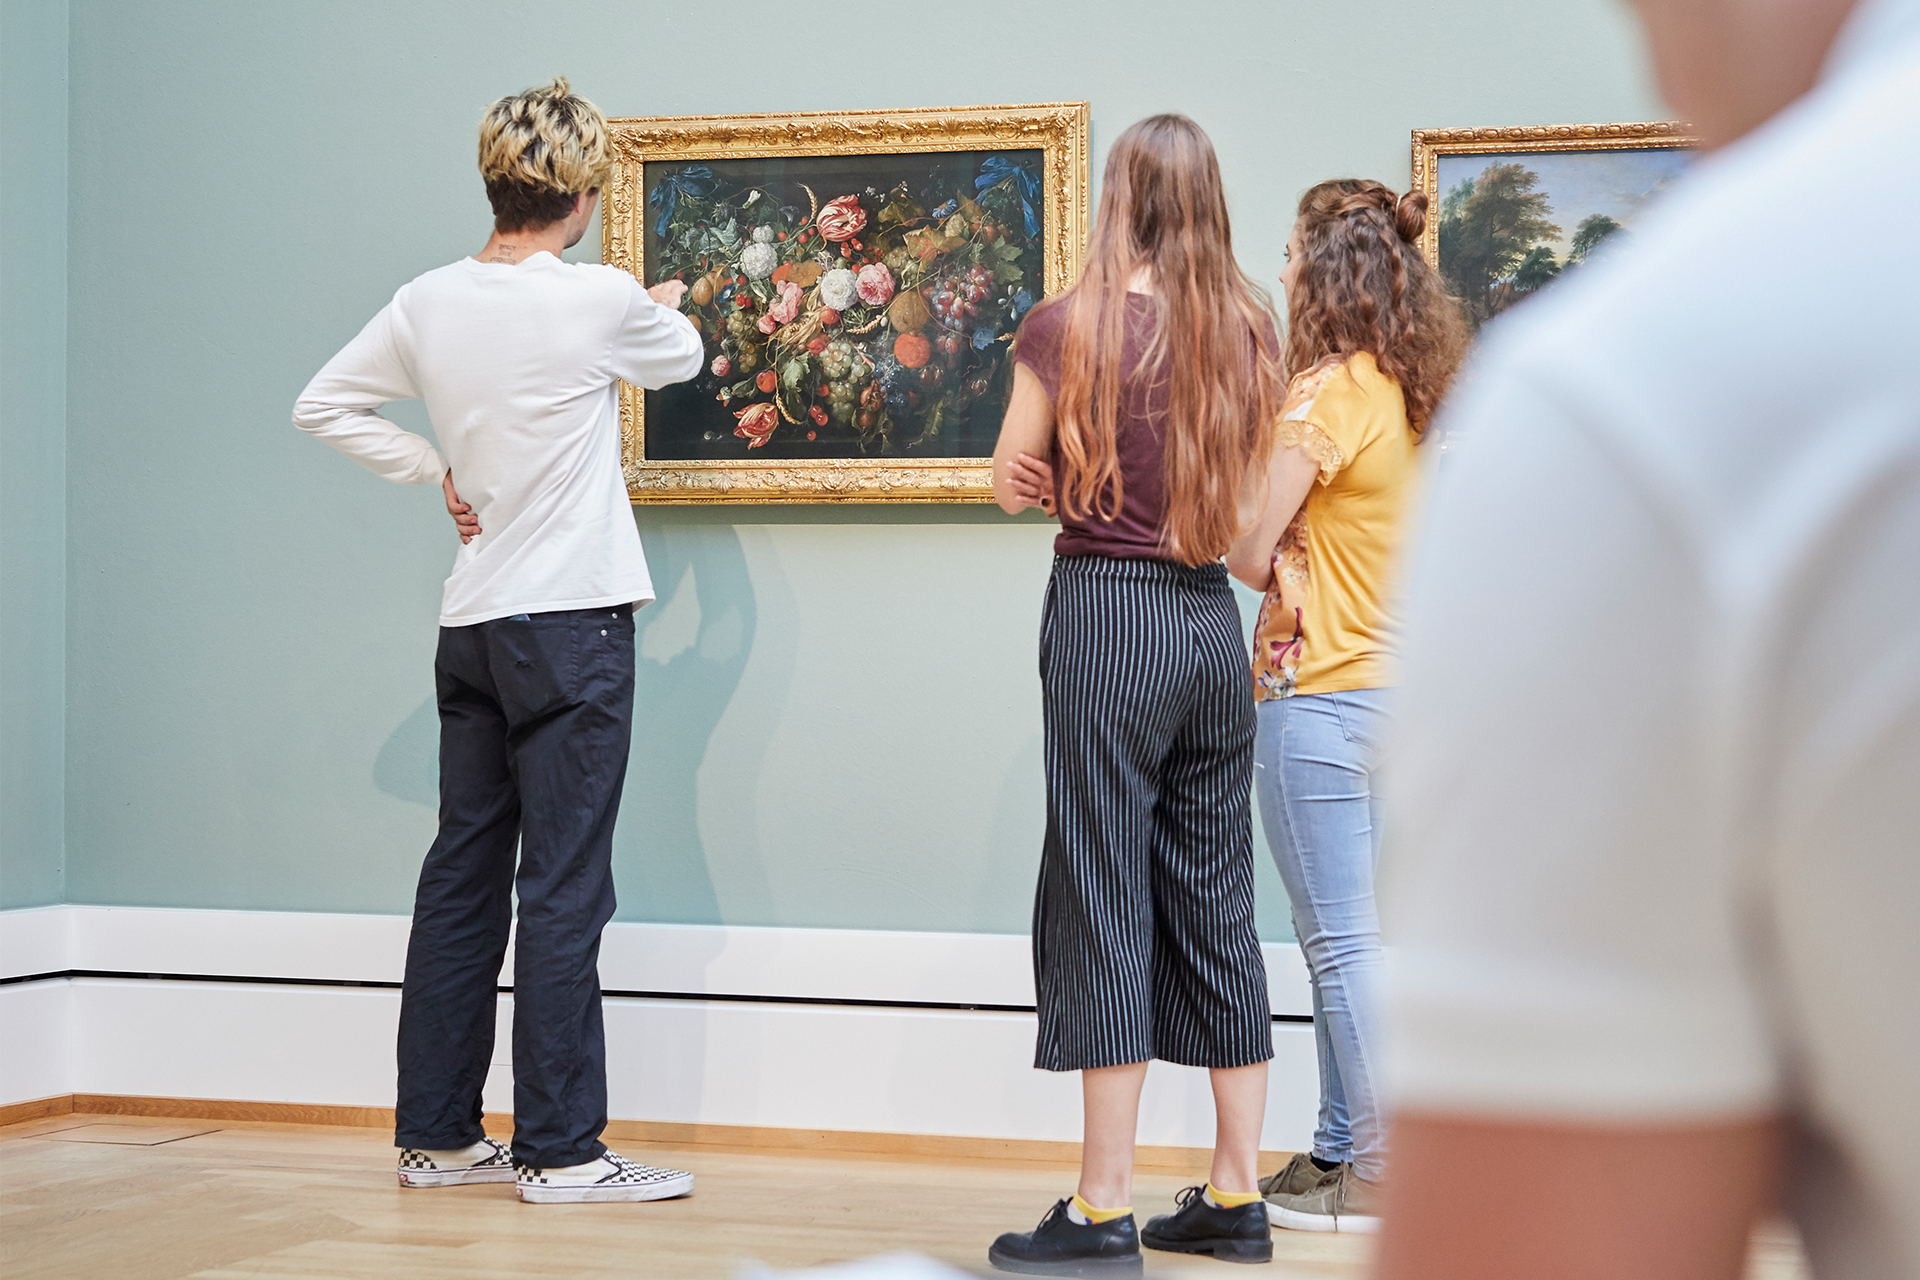 Drei junge Besucherinnen stehen vor einem Blumenstillleben und scheinen sich darüber auszutauschen. Im Vordergrund ist ein weiterer Besucher unscharf zu erkennen.